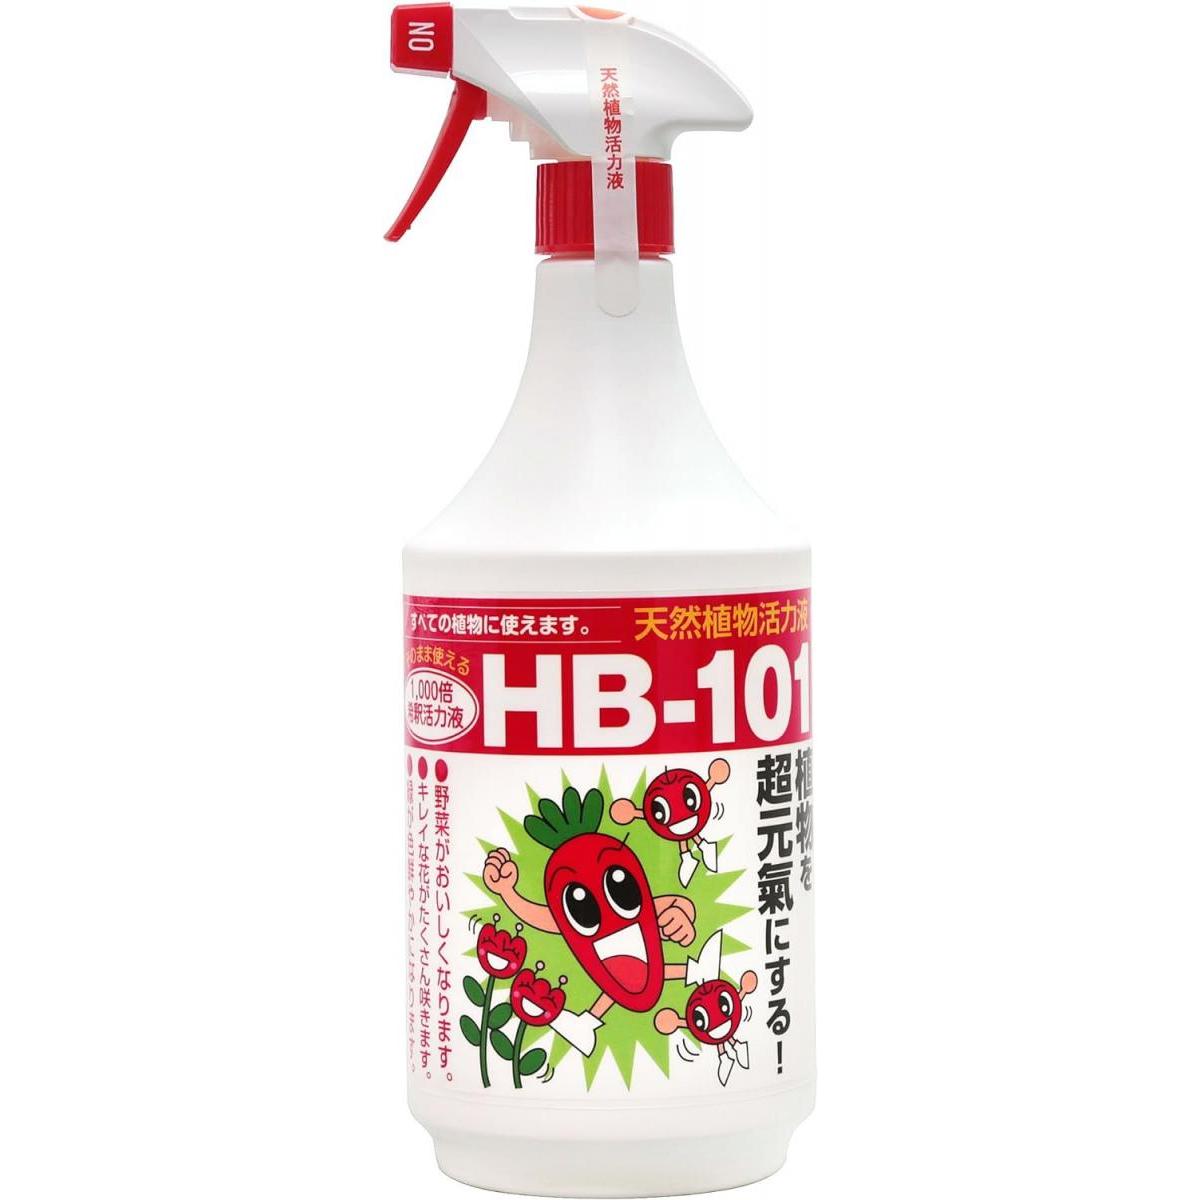 フローラ 植物活力剤 HB-101 即効性 希釈済みスプレー 1L 4522909000494 活力液 天然成分 有機栽培 減農薬栽培